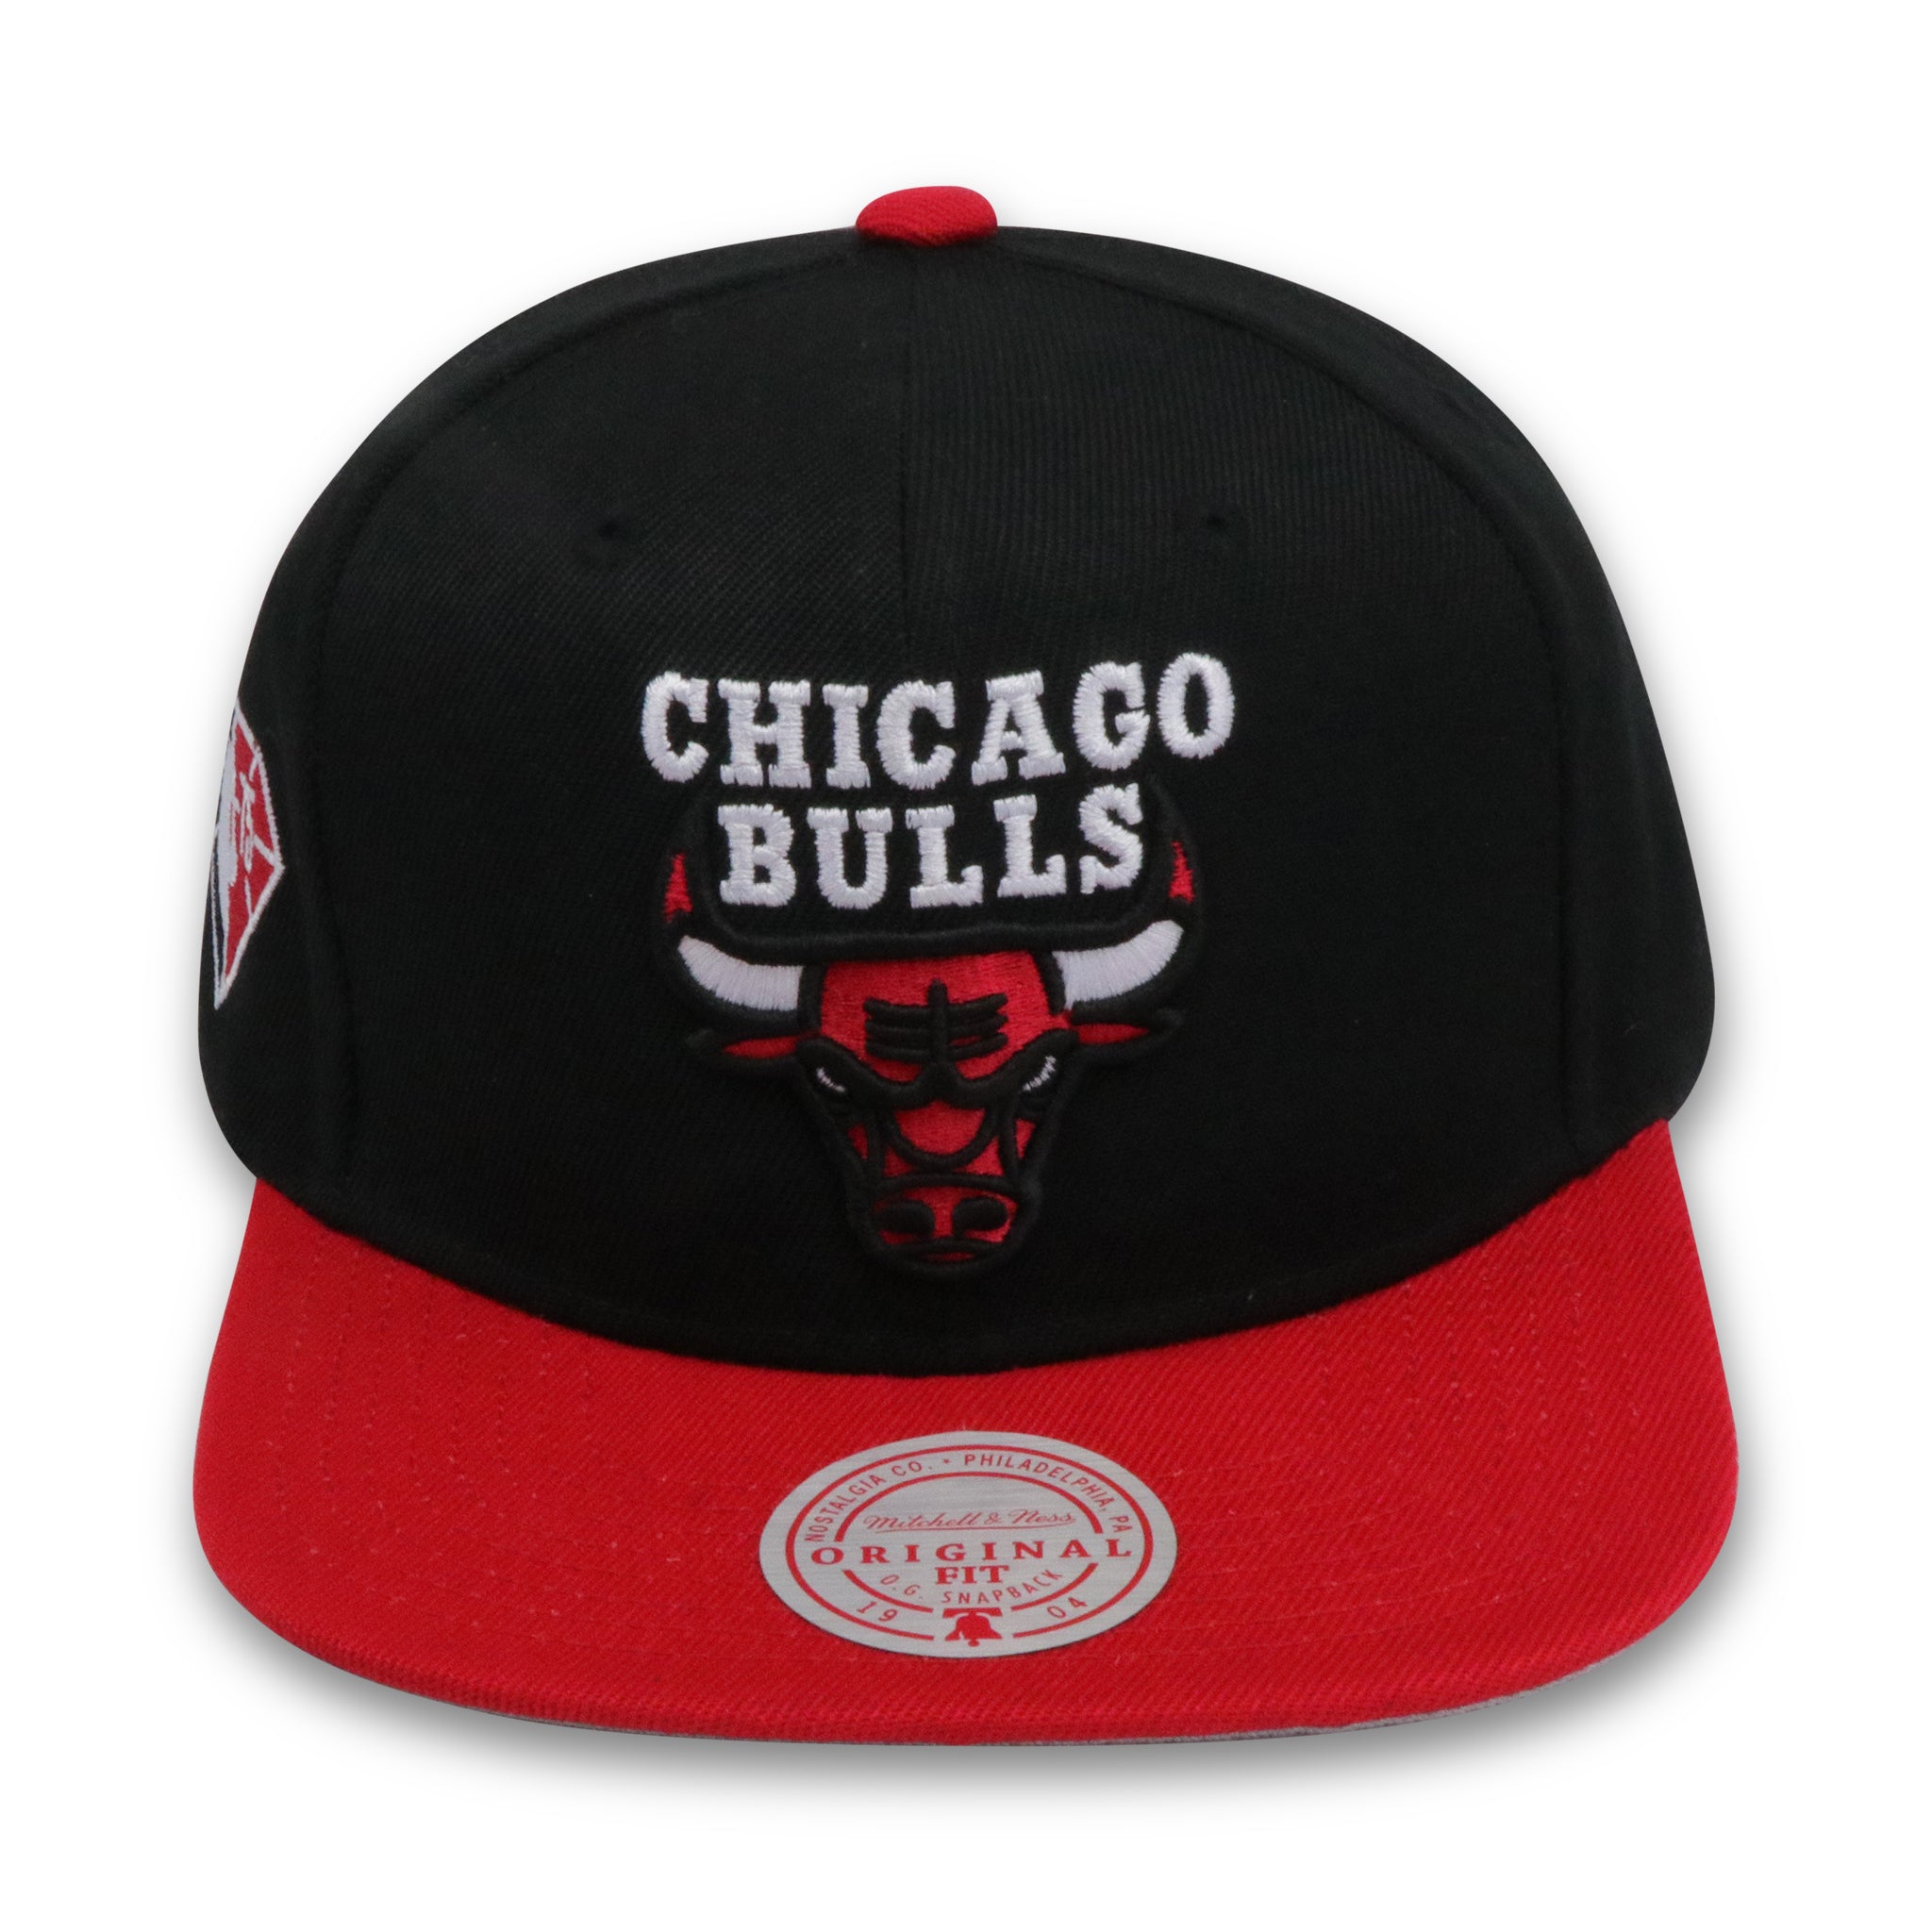 CHICAGO BULLS (NBA 75TH ANN) MITCHELL & NESS SNAPBACK (SH21476)